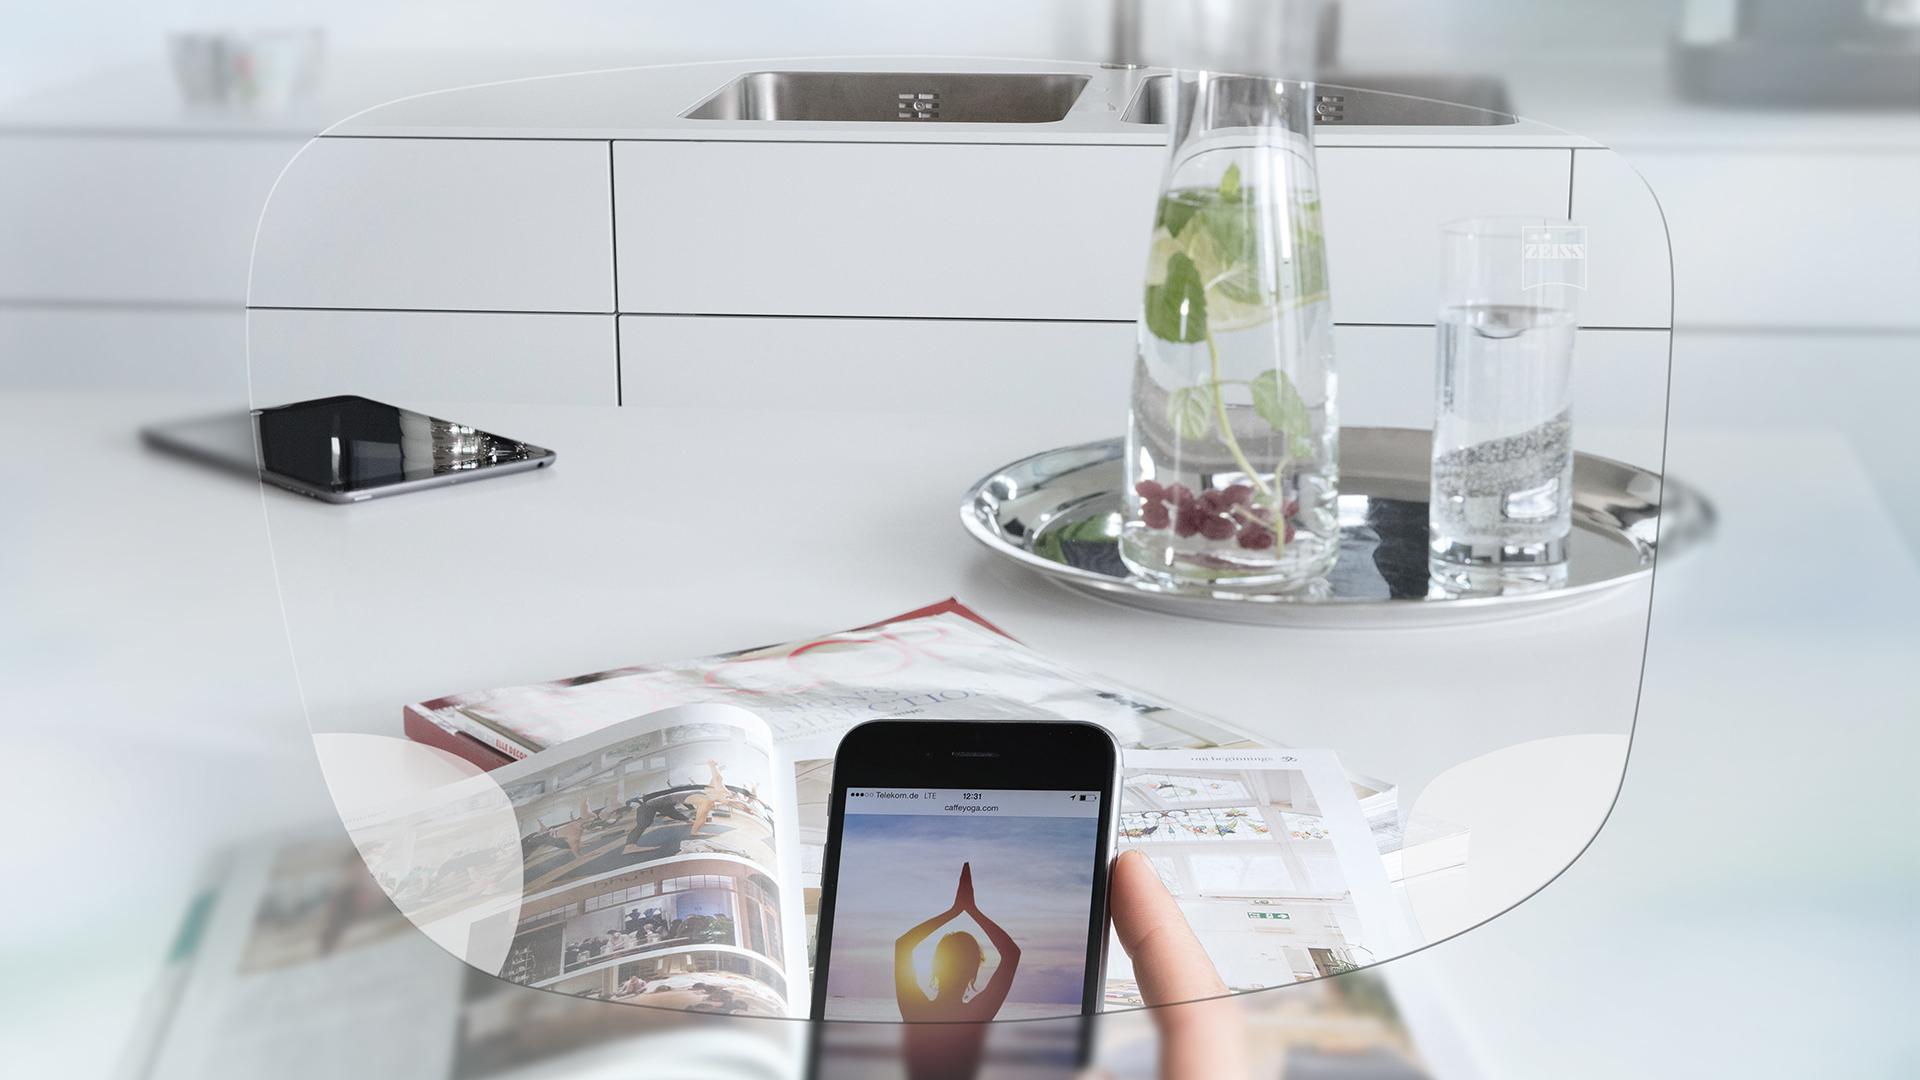 Pohľad cez jednoohniskové okuliarové šošovky ZEISS EnergizeMe na obrazovku smartfónu a usporiadaný kuchynský stôl